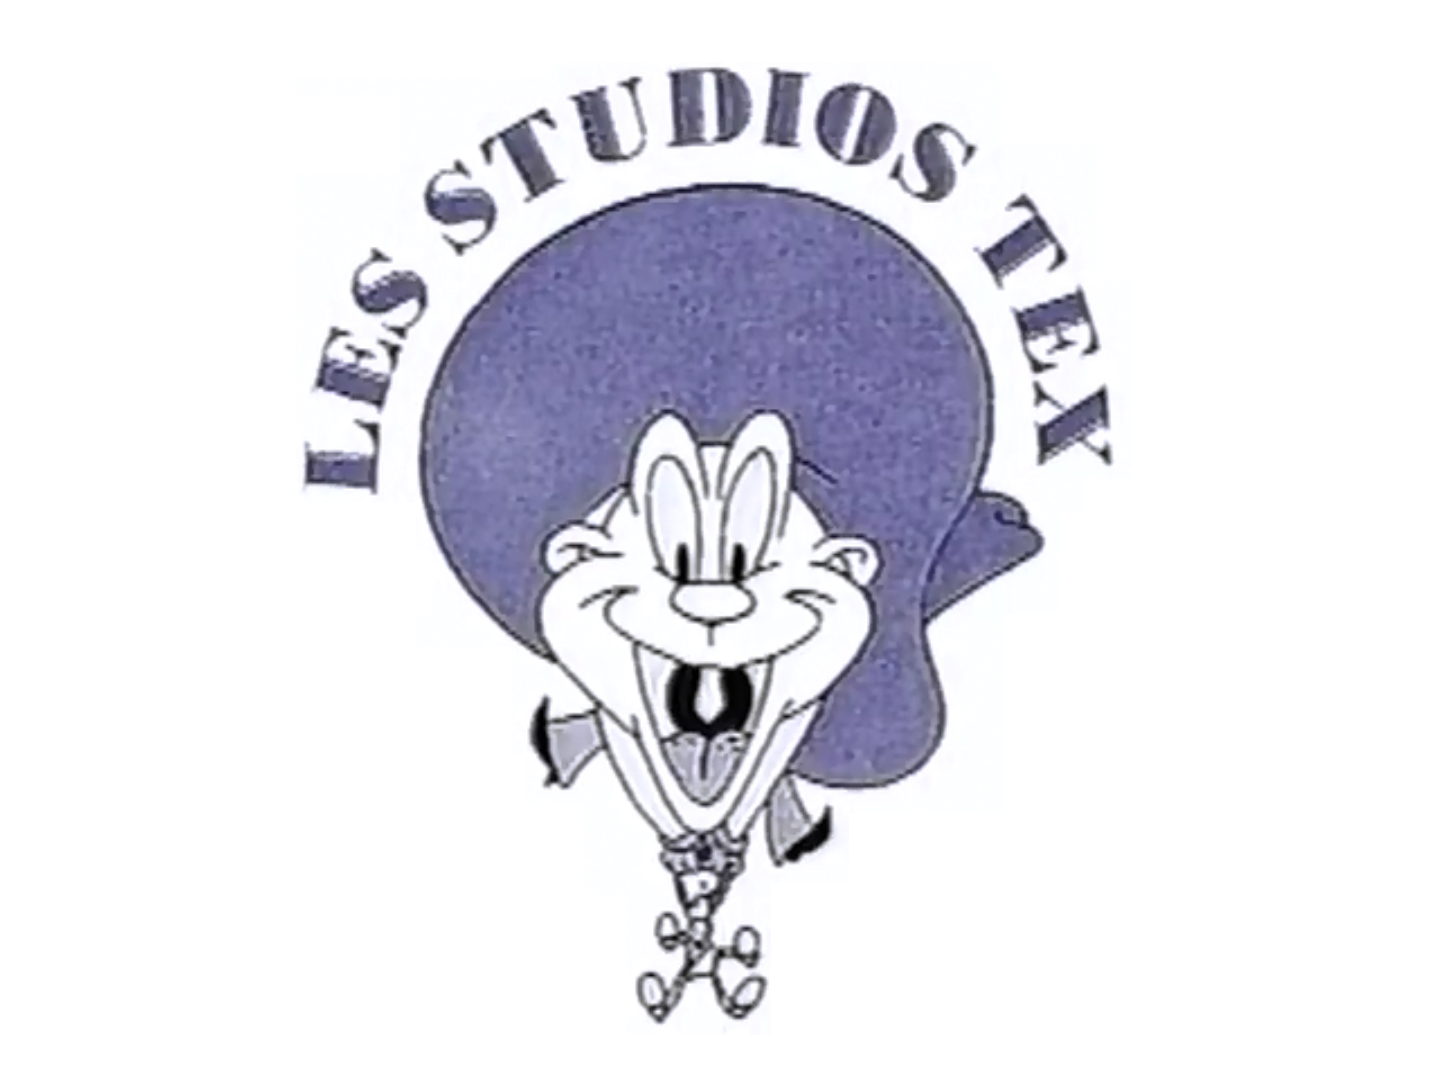 Les Studios Tex (2000)